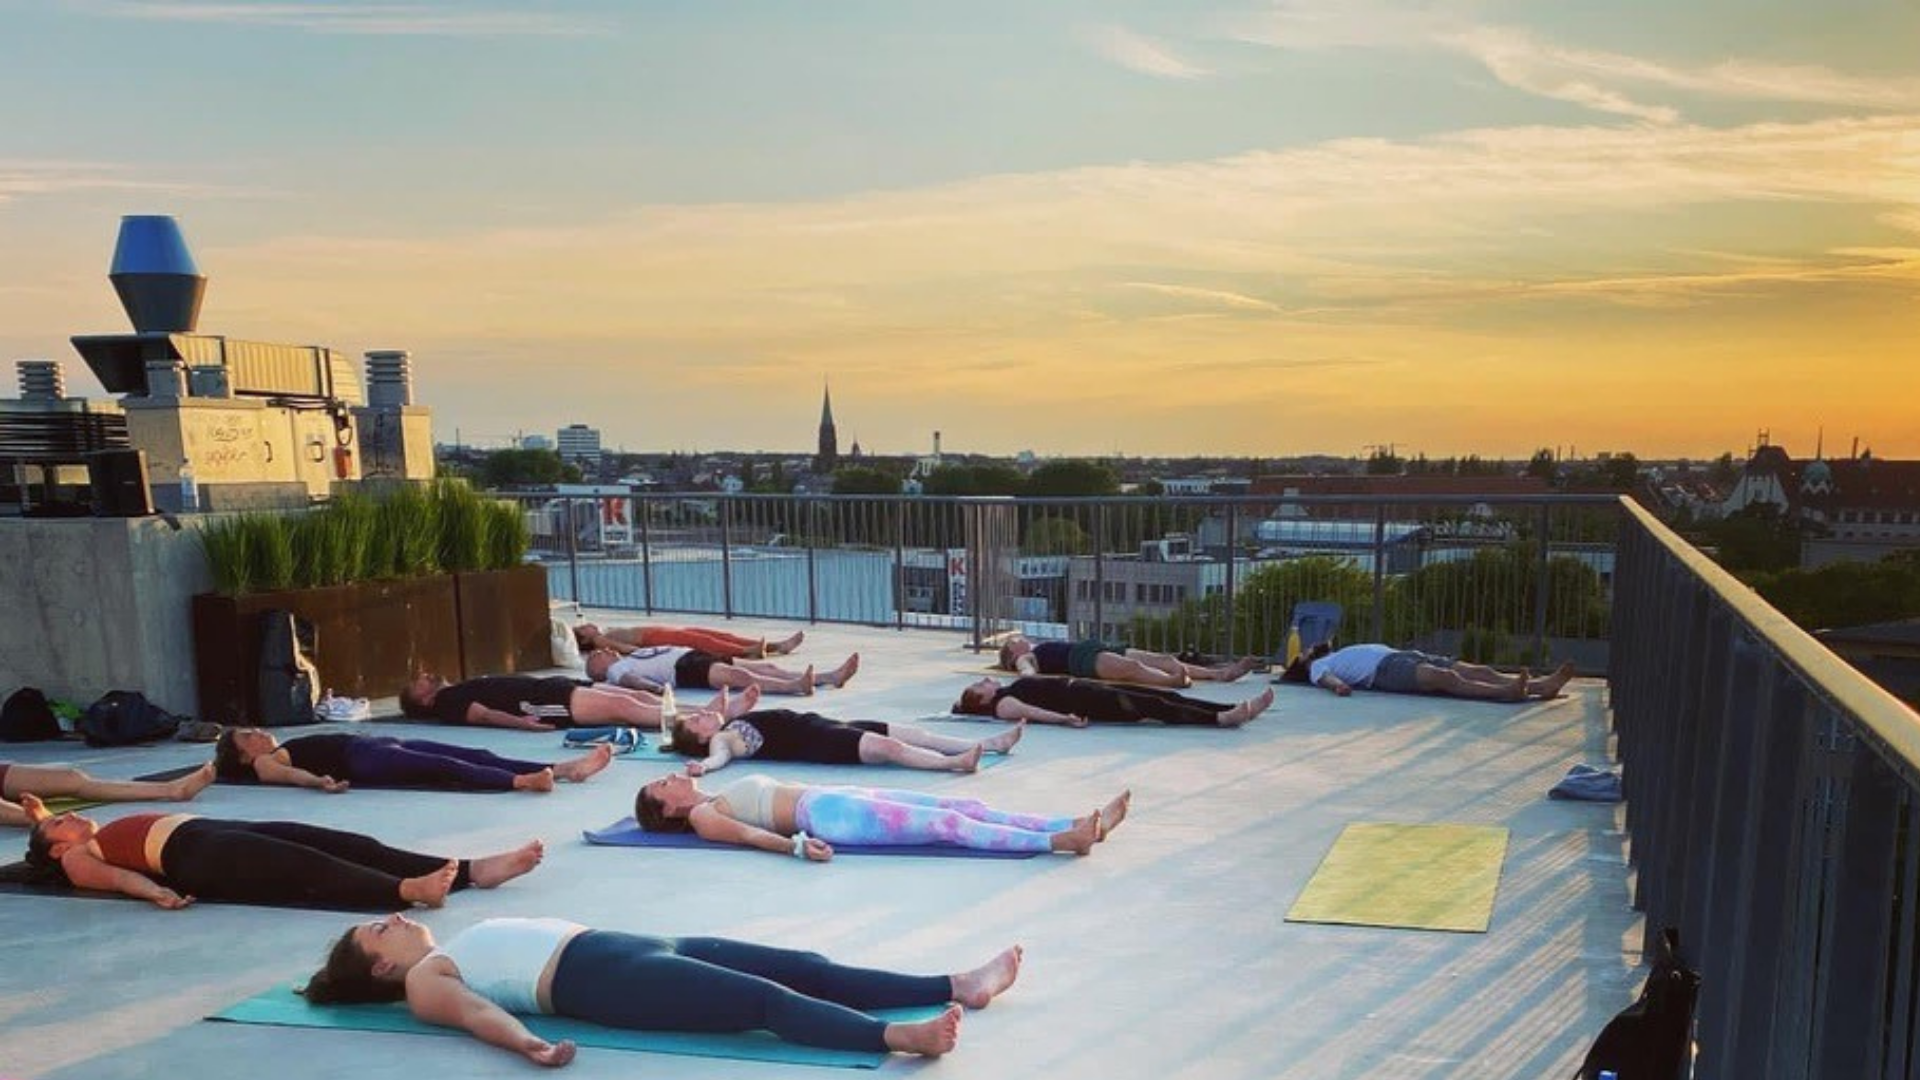 begehbare Dächer in Berlin Wer Yogaposen in luftiger Höhe vollführt, wird vielleicht merken, dass der Geist noch freier fließen kann.